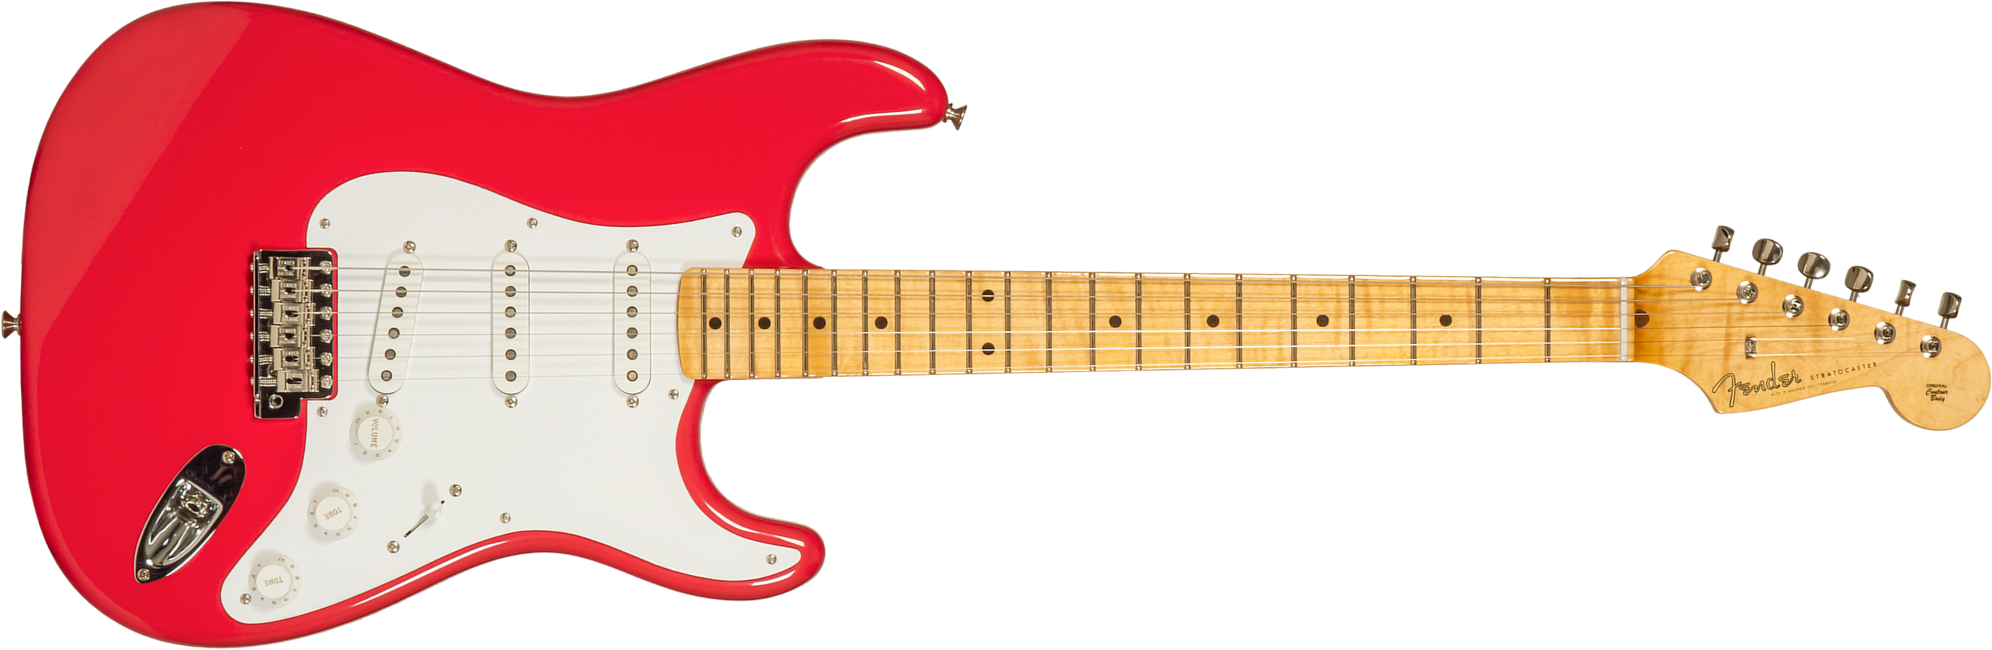 Fender Custom Shop Strat 1956 3s Trem Mn #r133022 - Nos Fiesta Red - Elektrische gitaar in Str-vorm - Main picture